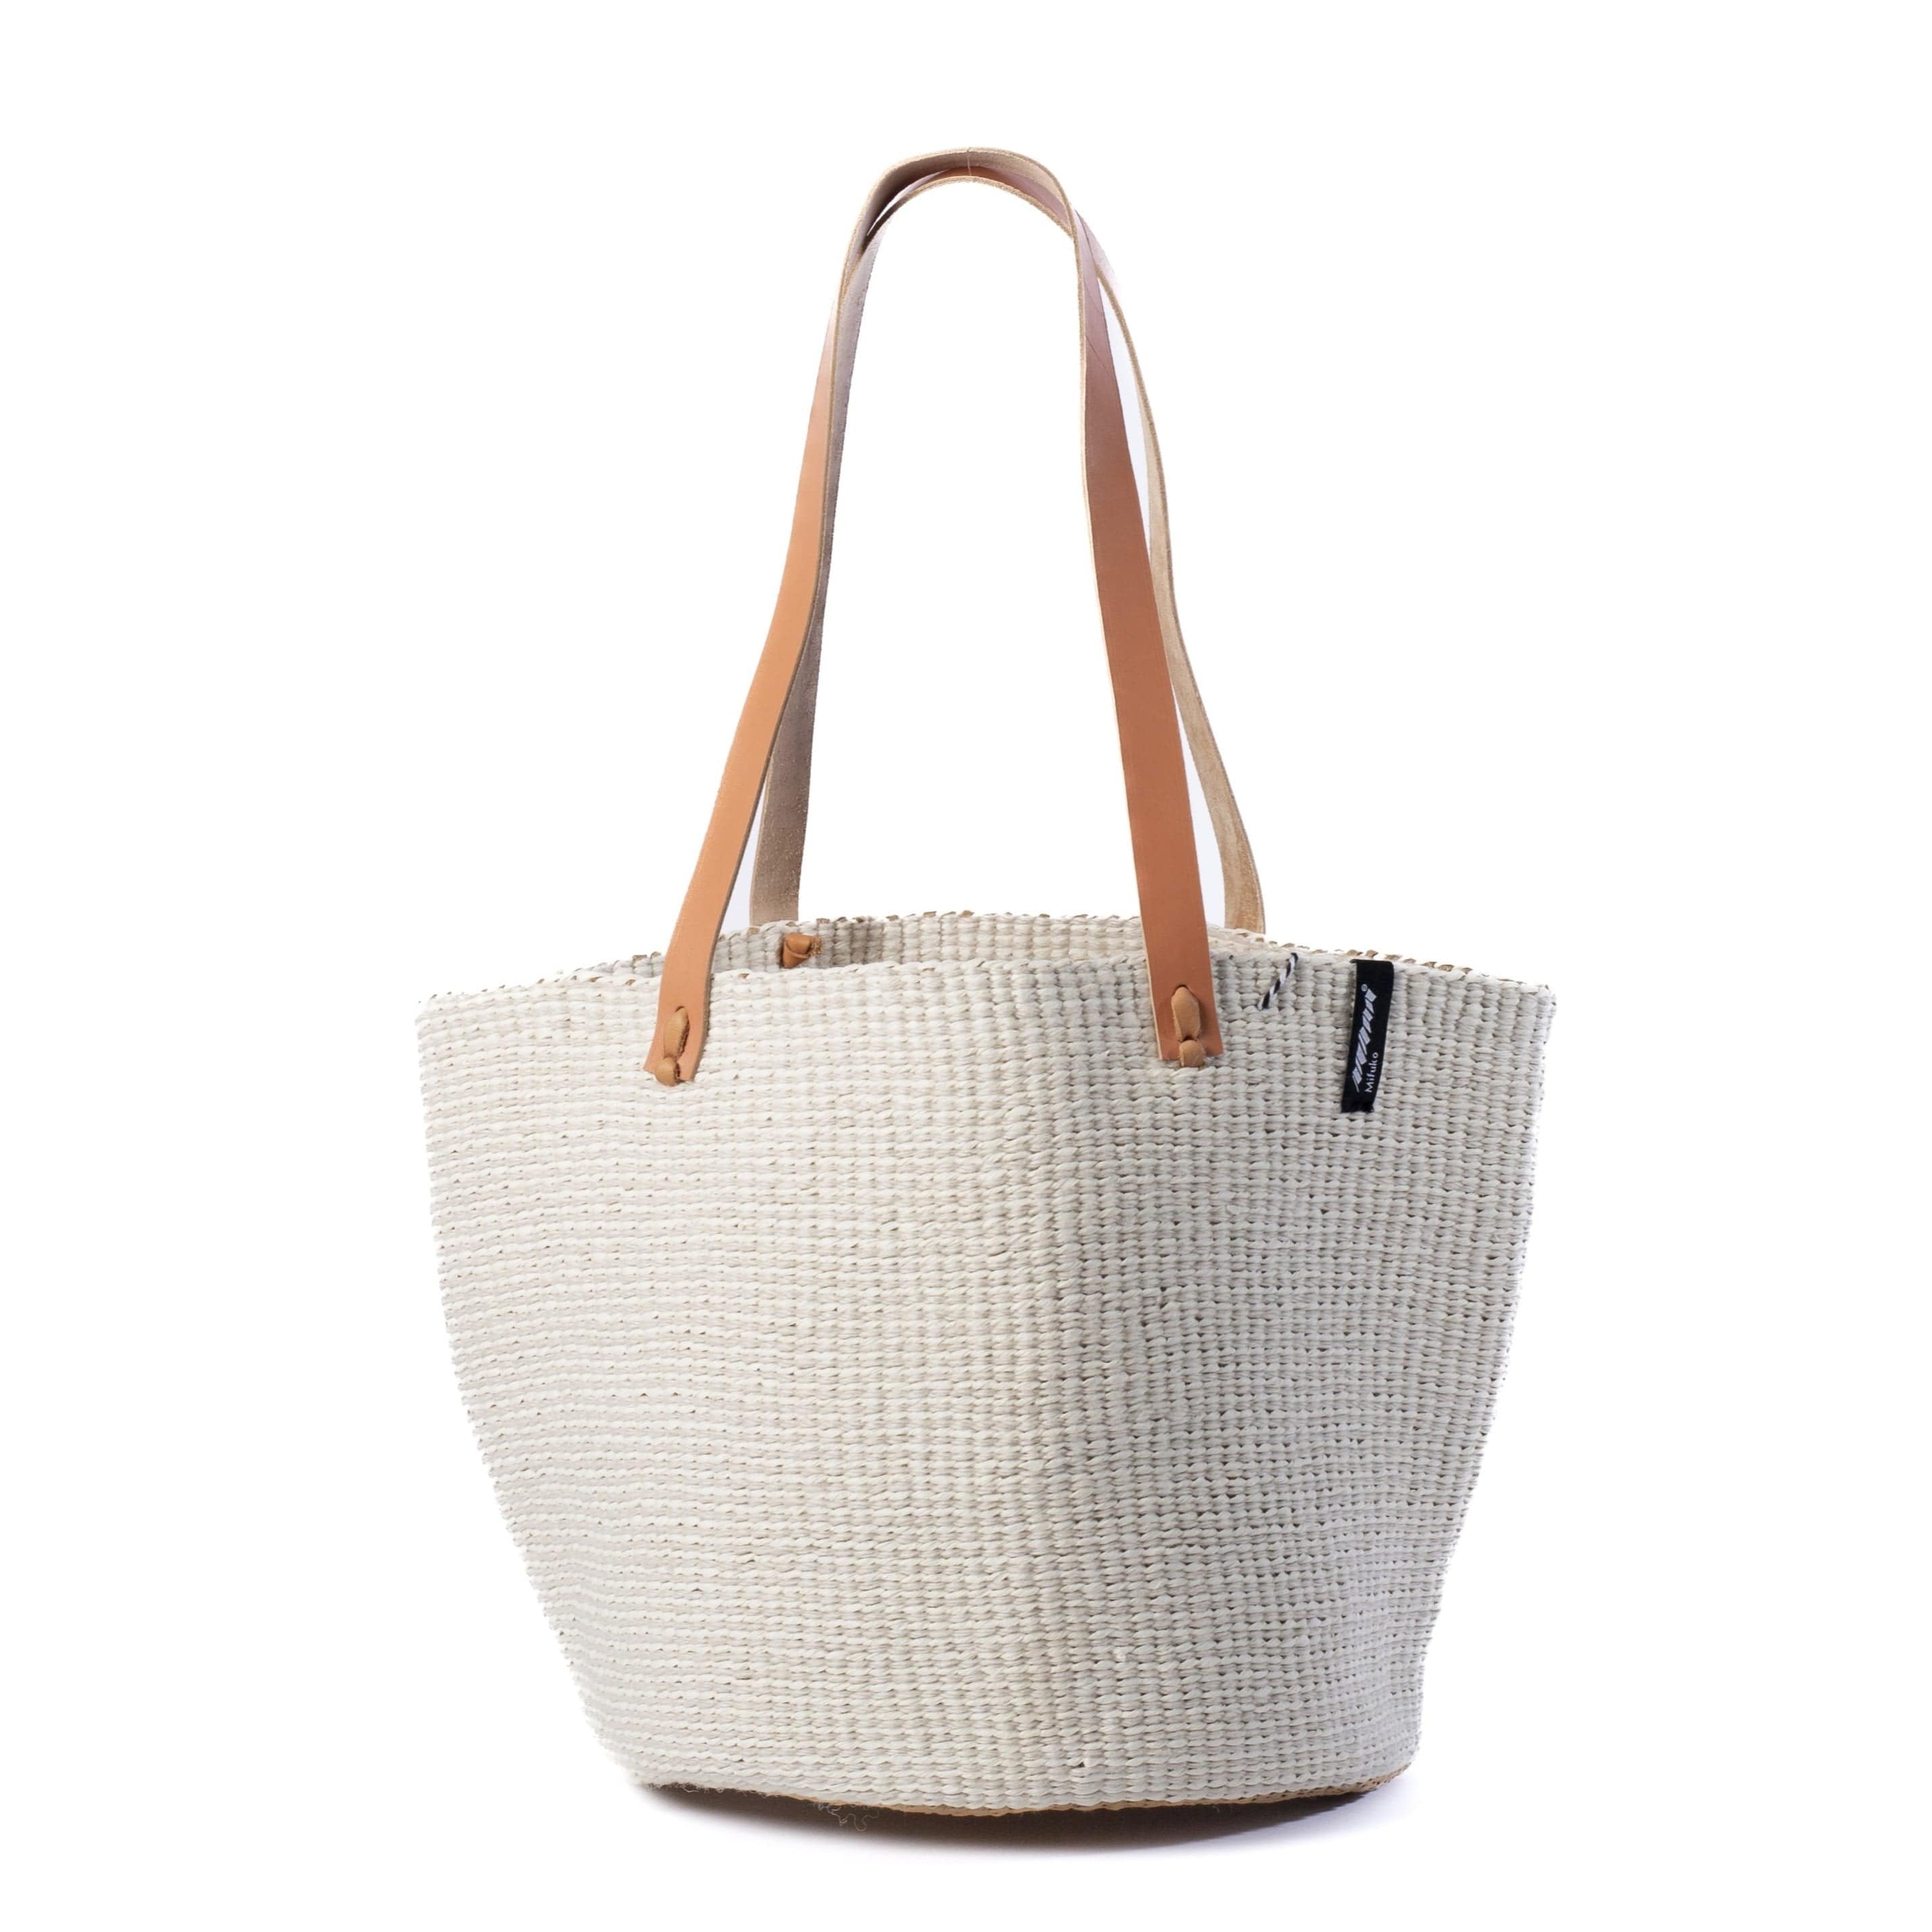 Mifuko Wool and paper Shopper basket M Pamba shopper basket | White plain weave M